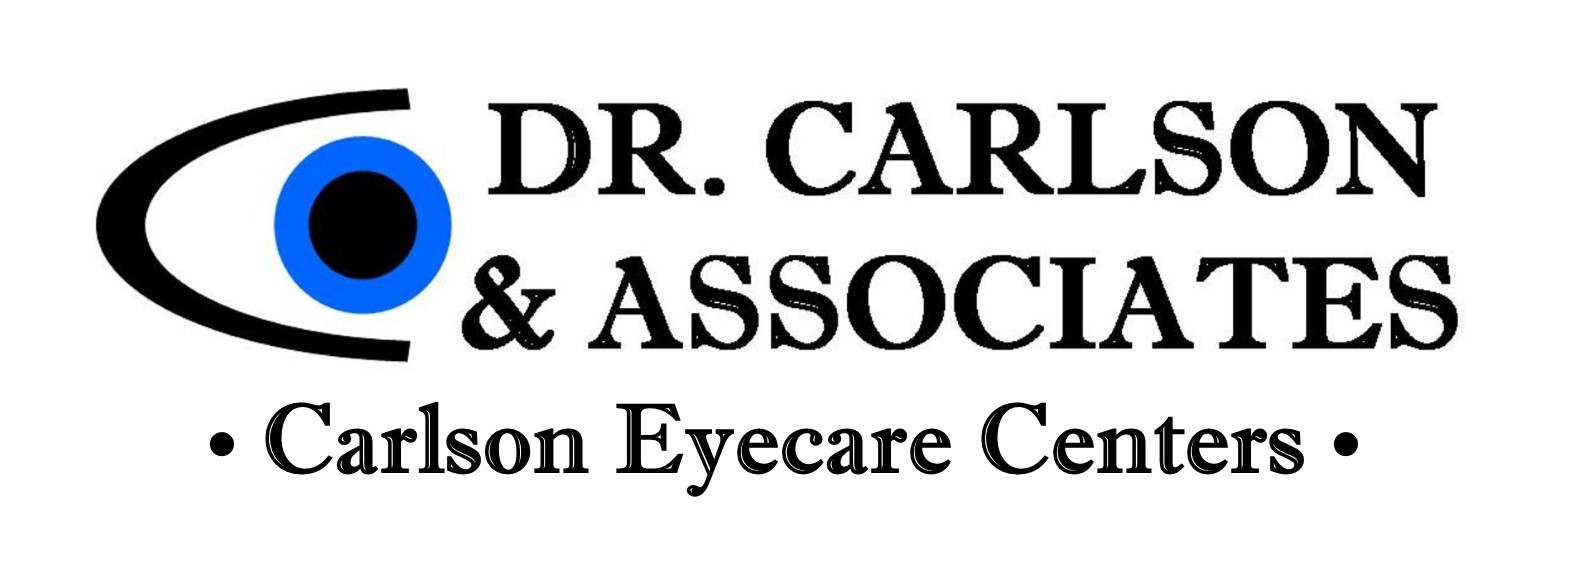 Dr. Carlson